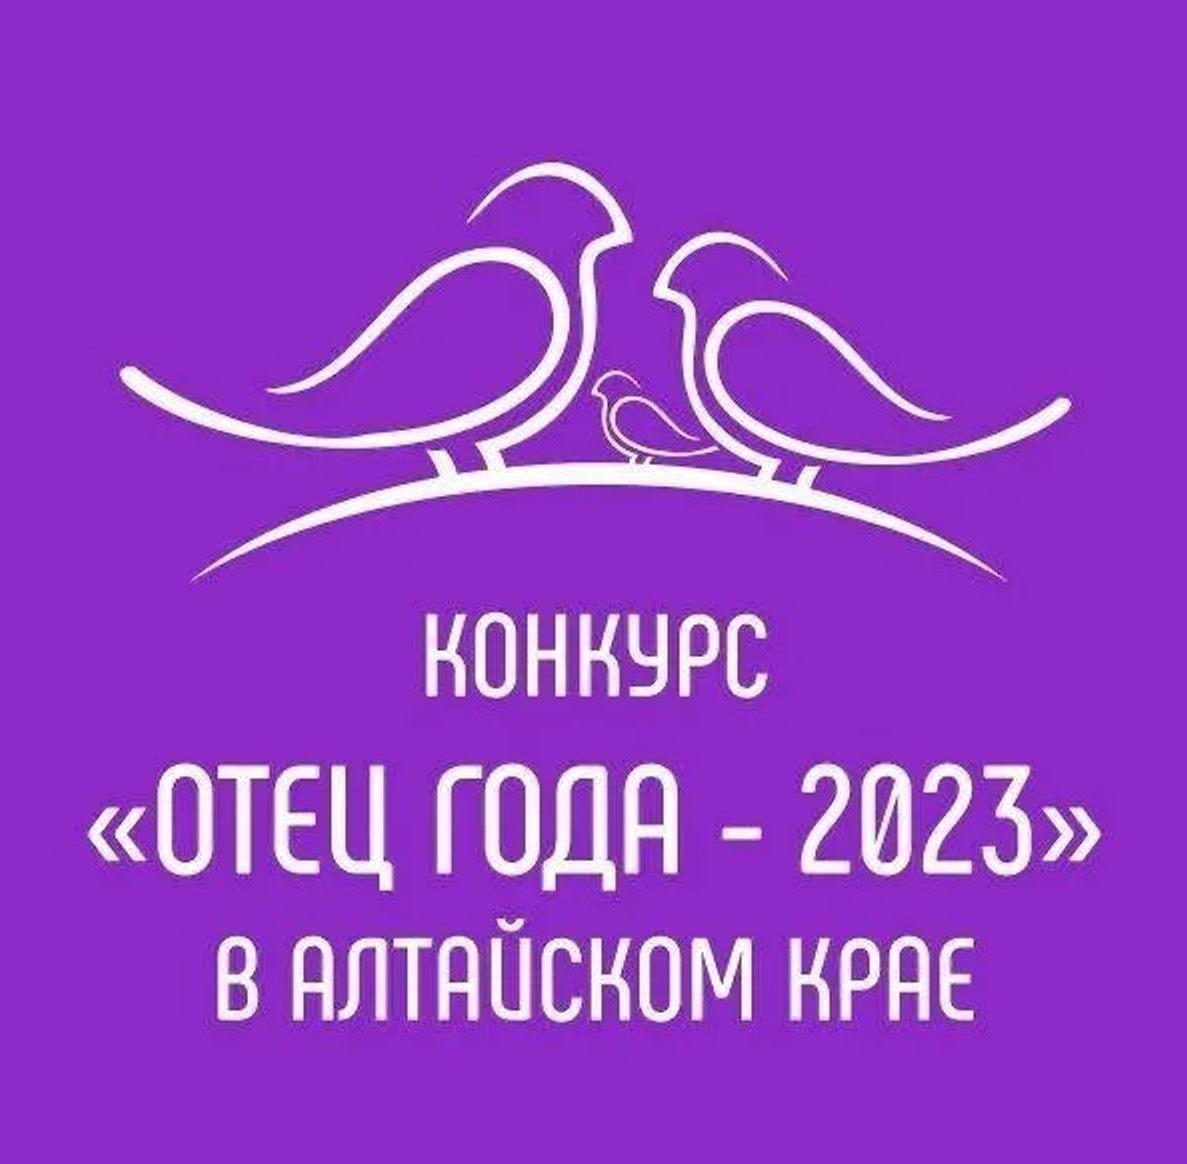 В Алтайском крае пройдет конкурс «Отец года - 2023».